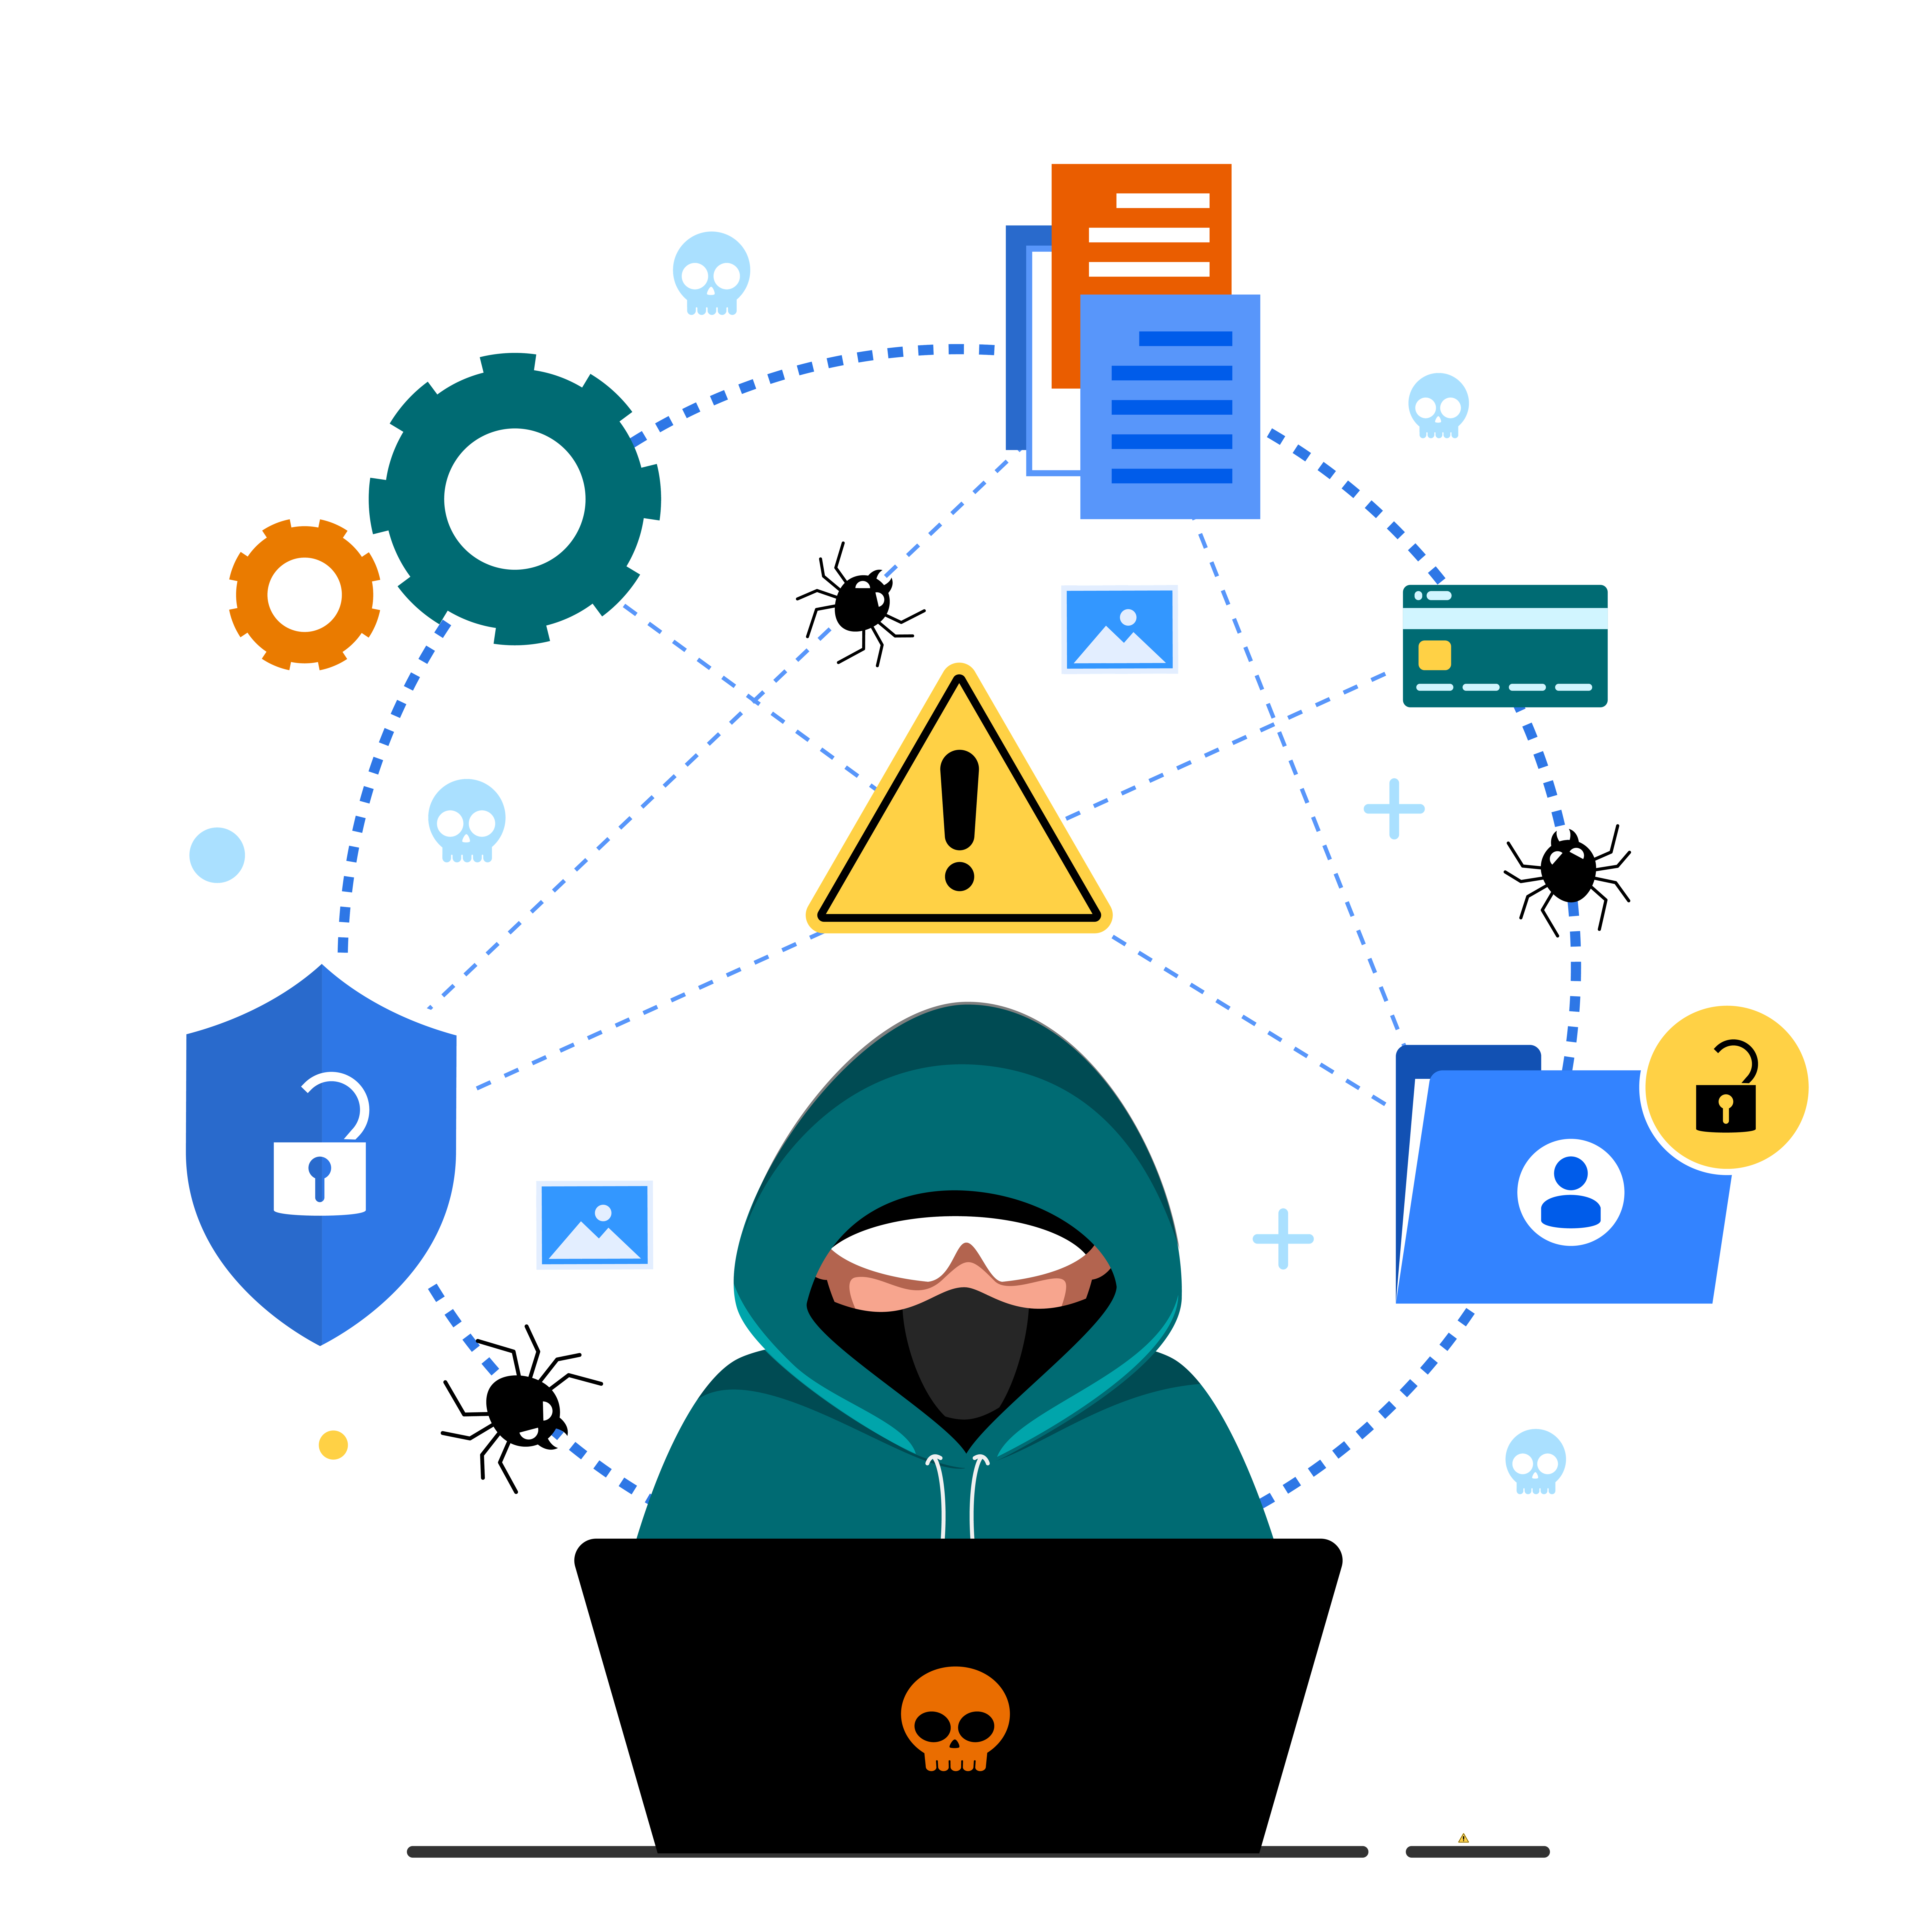 illustration of a hacker